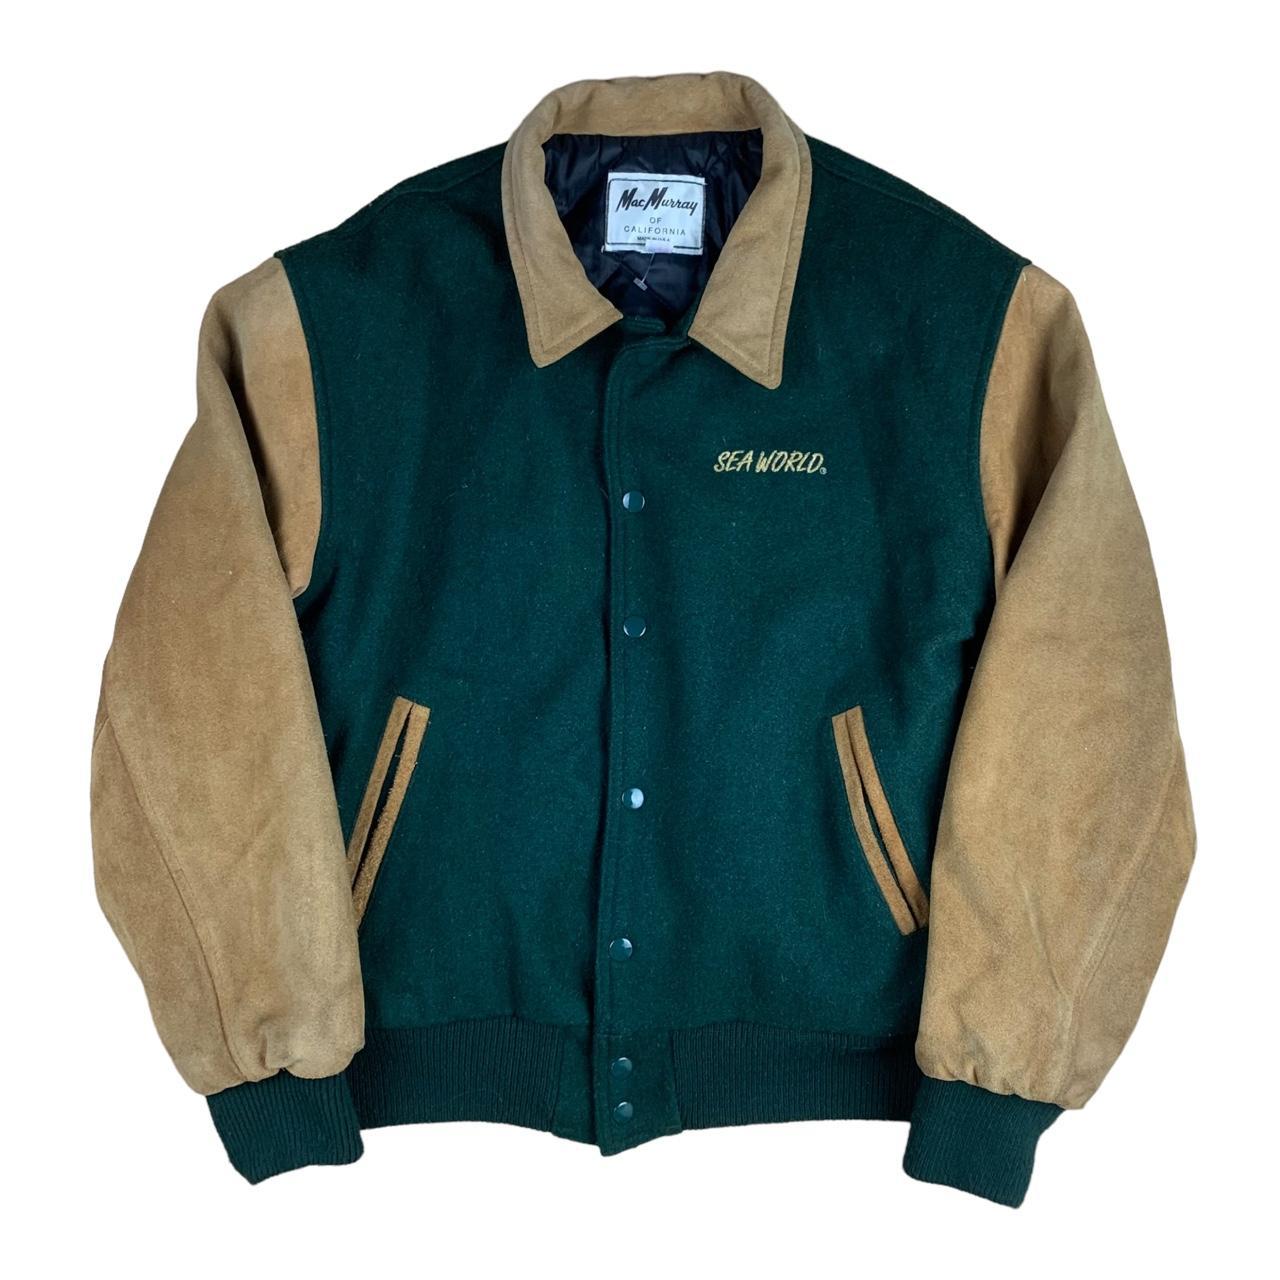 American Vintage Men's Green and Tan Jacket | Depop